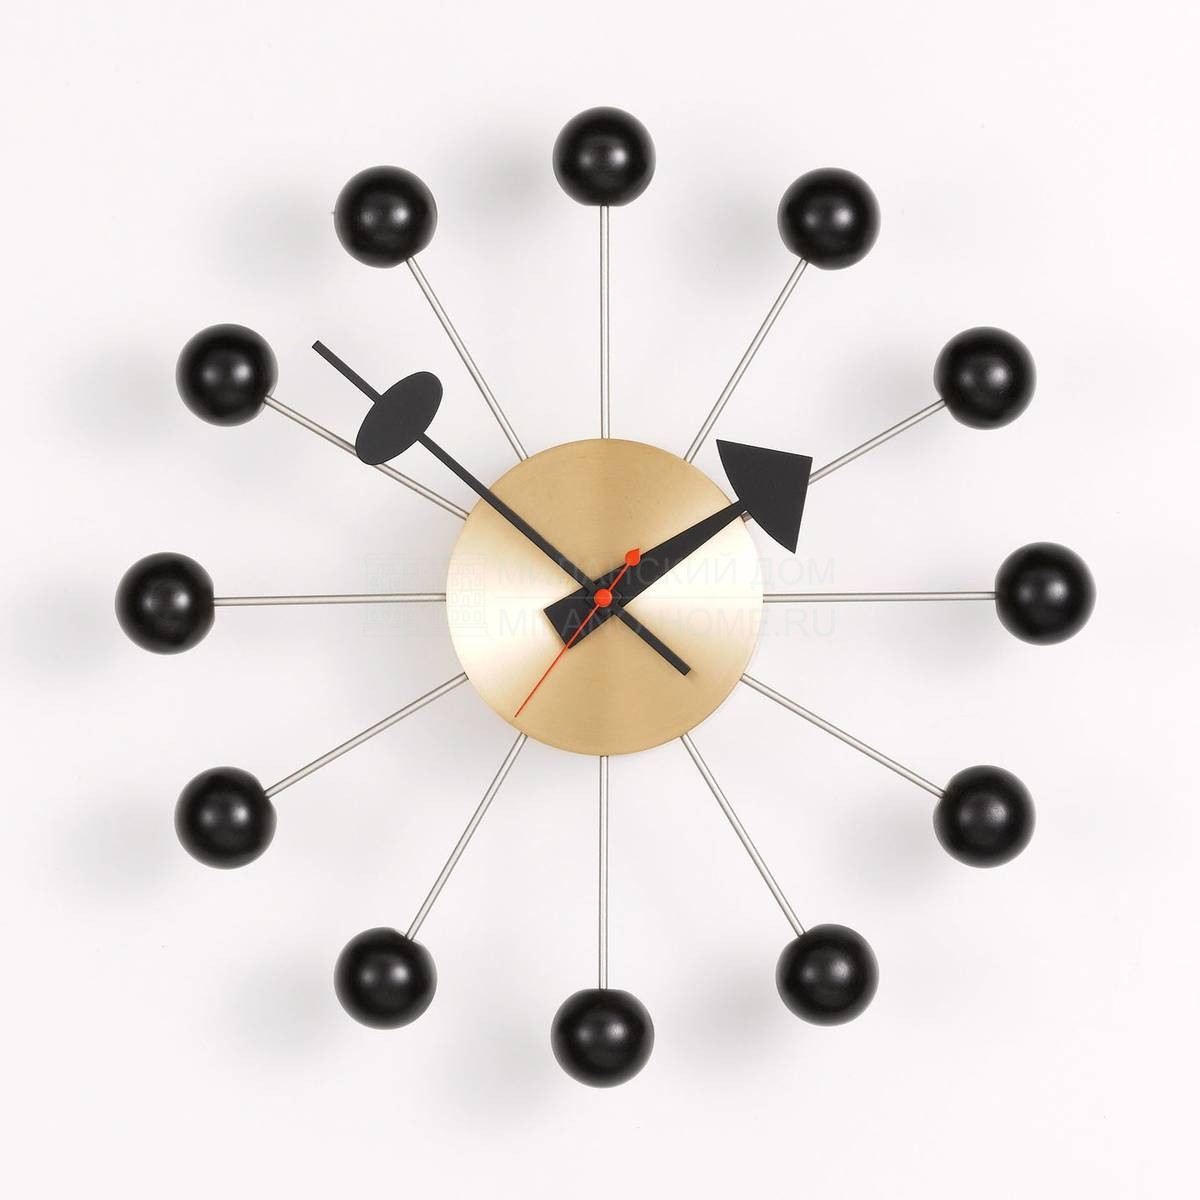 Настенные часы Ball Clock из Швейцарии фабрики VITRA